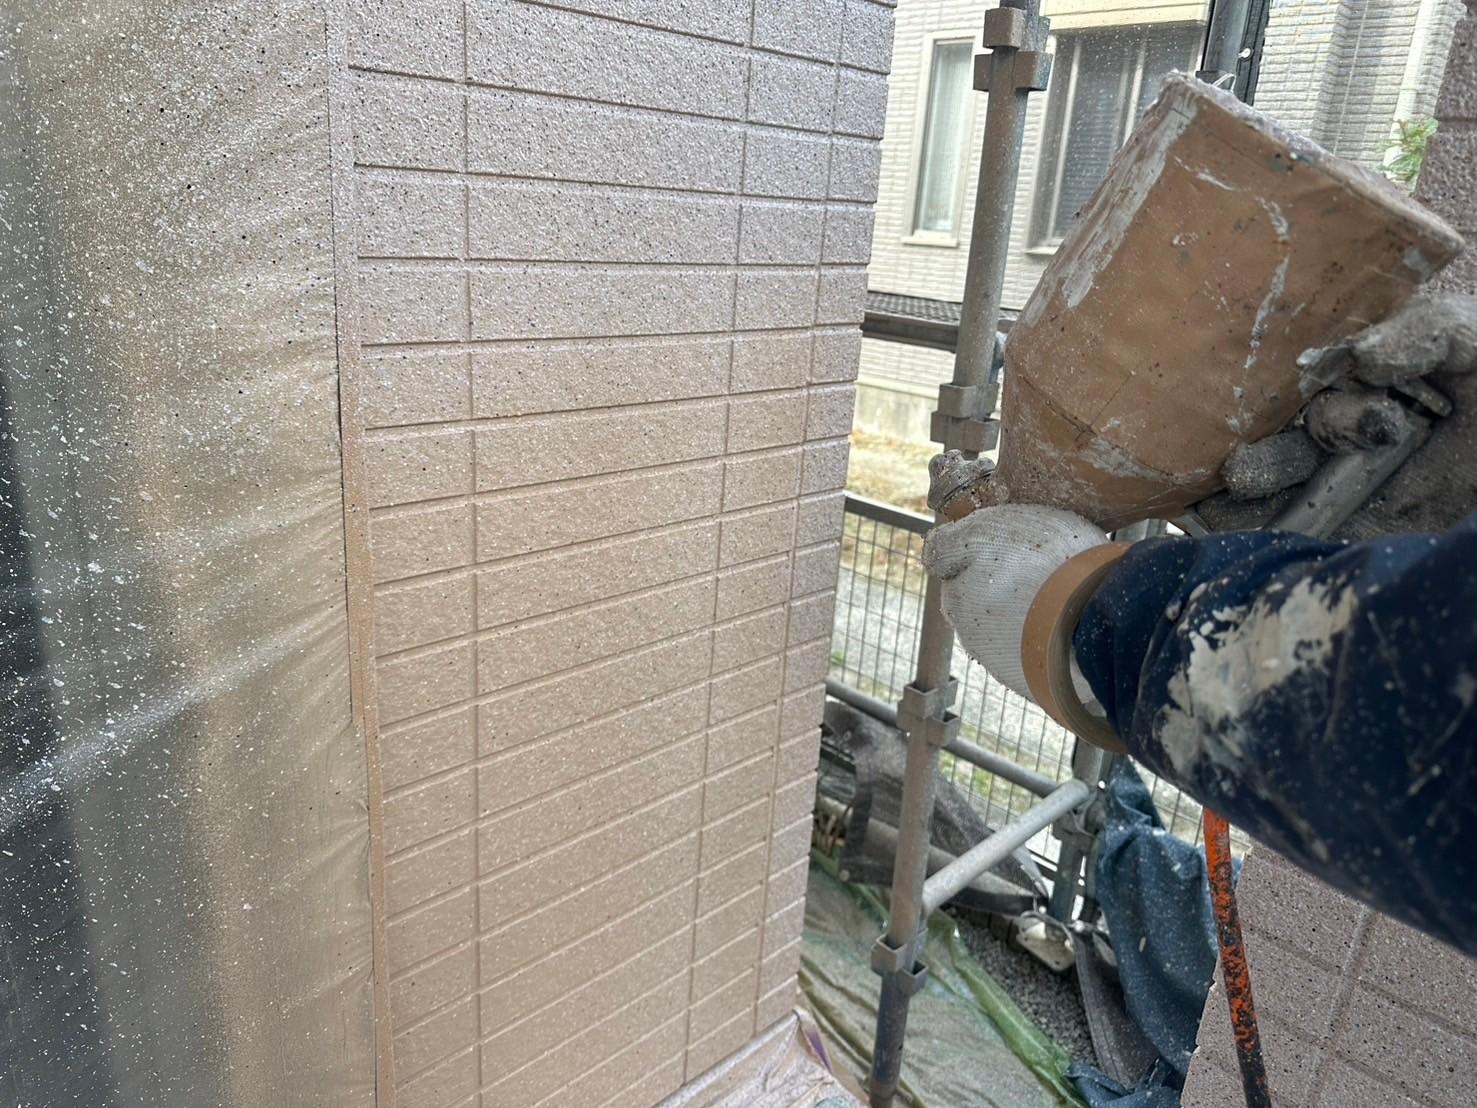 福岡県福岡市東区香椎台のN様邸で外壁にネオフレッシュティアラの多彩色塗料を吹き付けて塗装工事を行います。2/9完成です。【ホームページより】